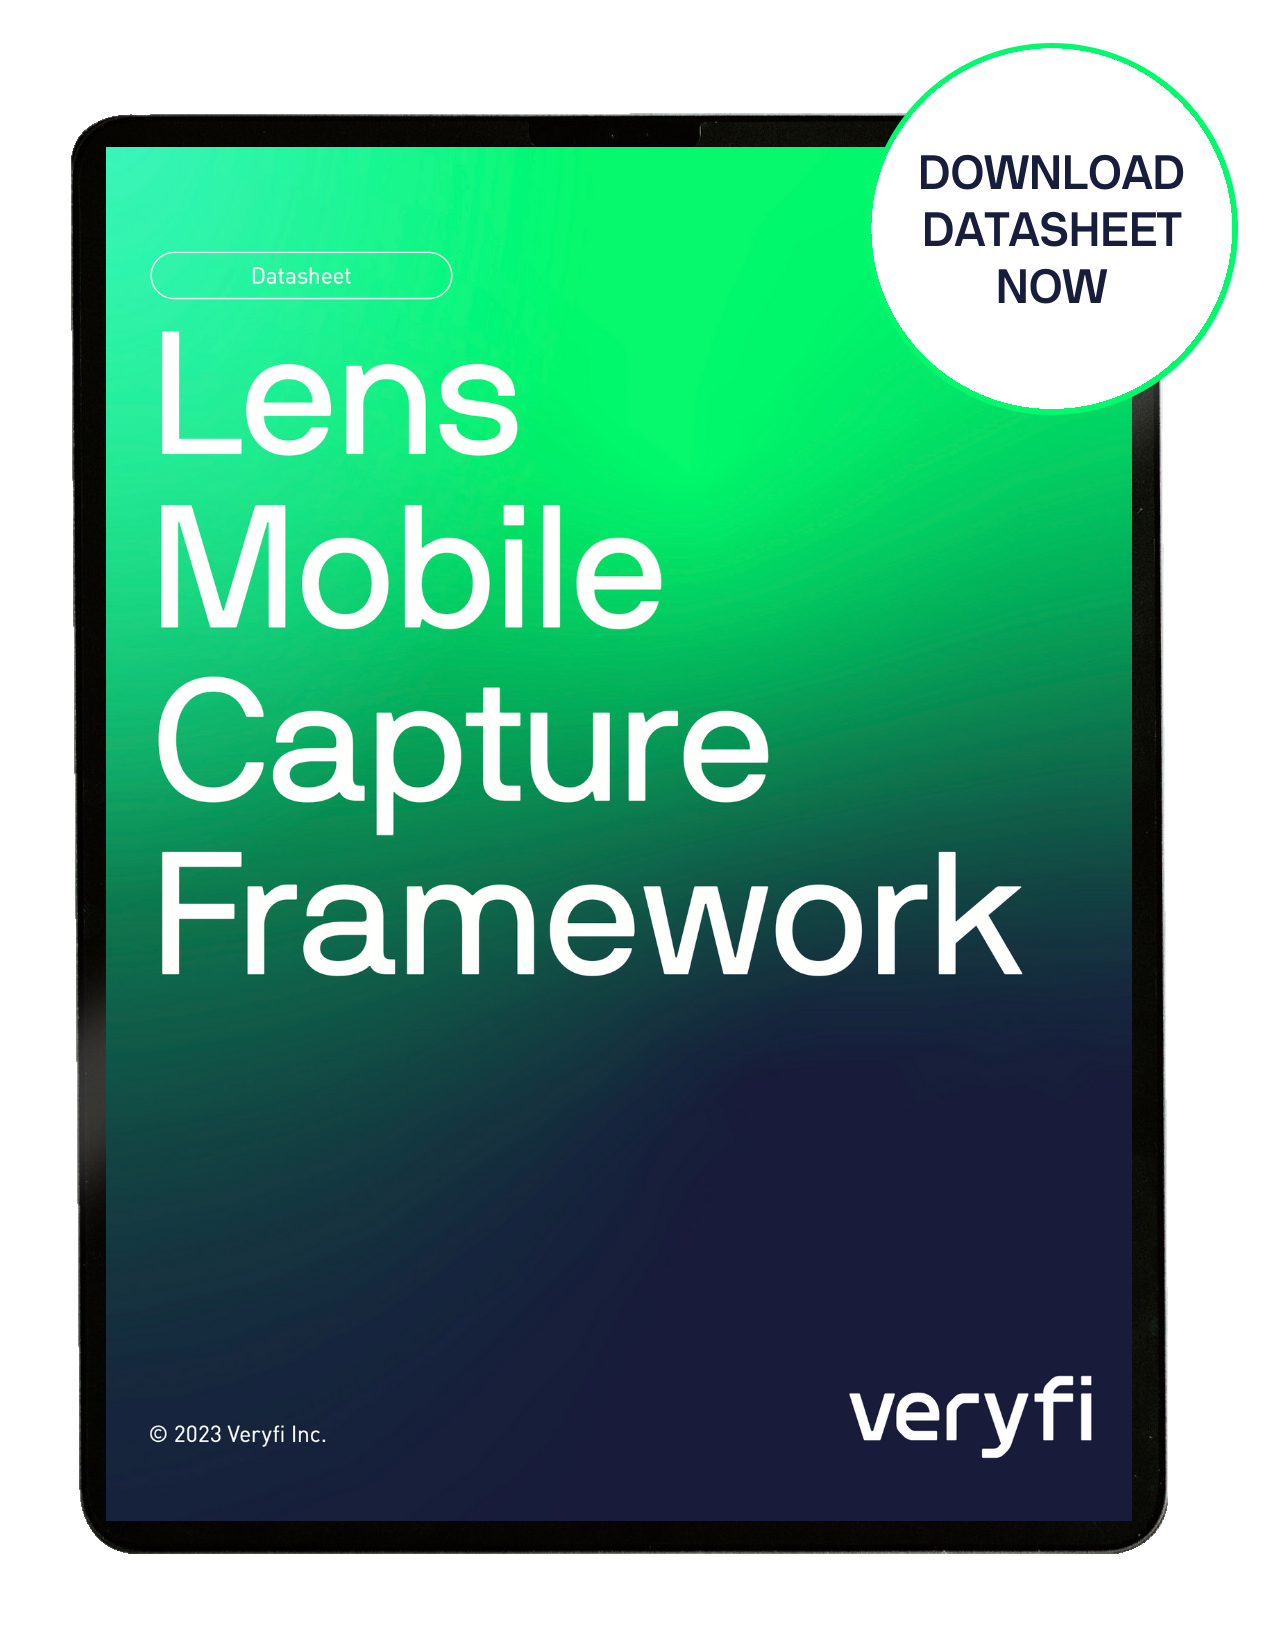 Lens Mobile Capture Framework DataSheet.png